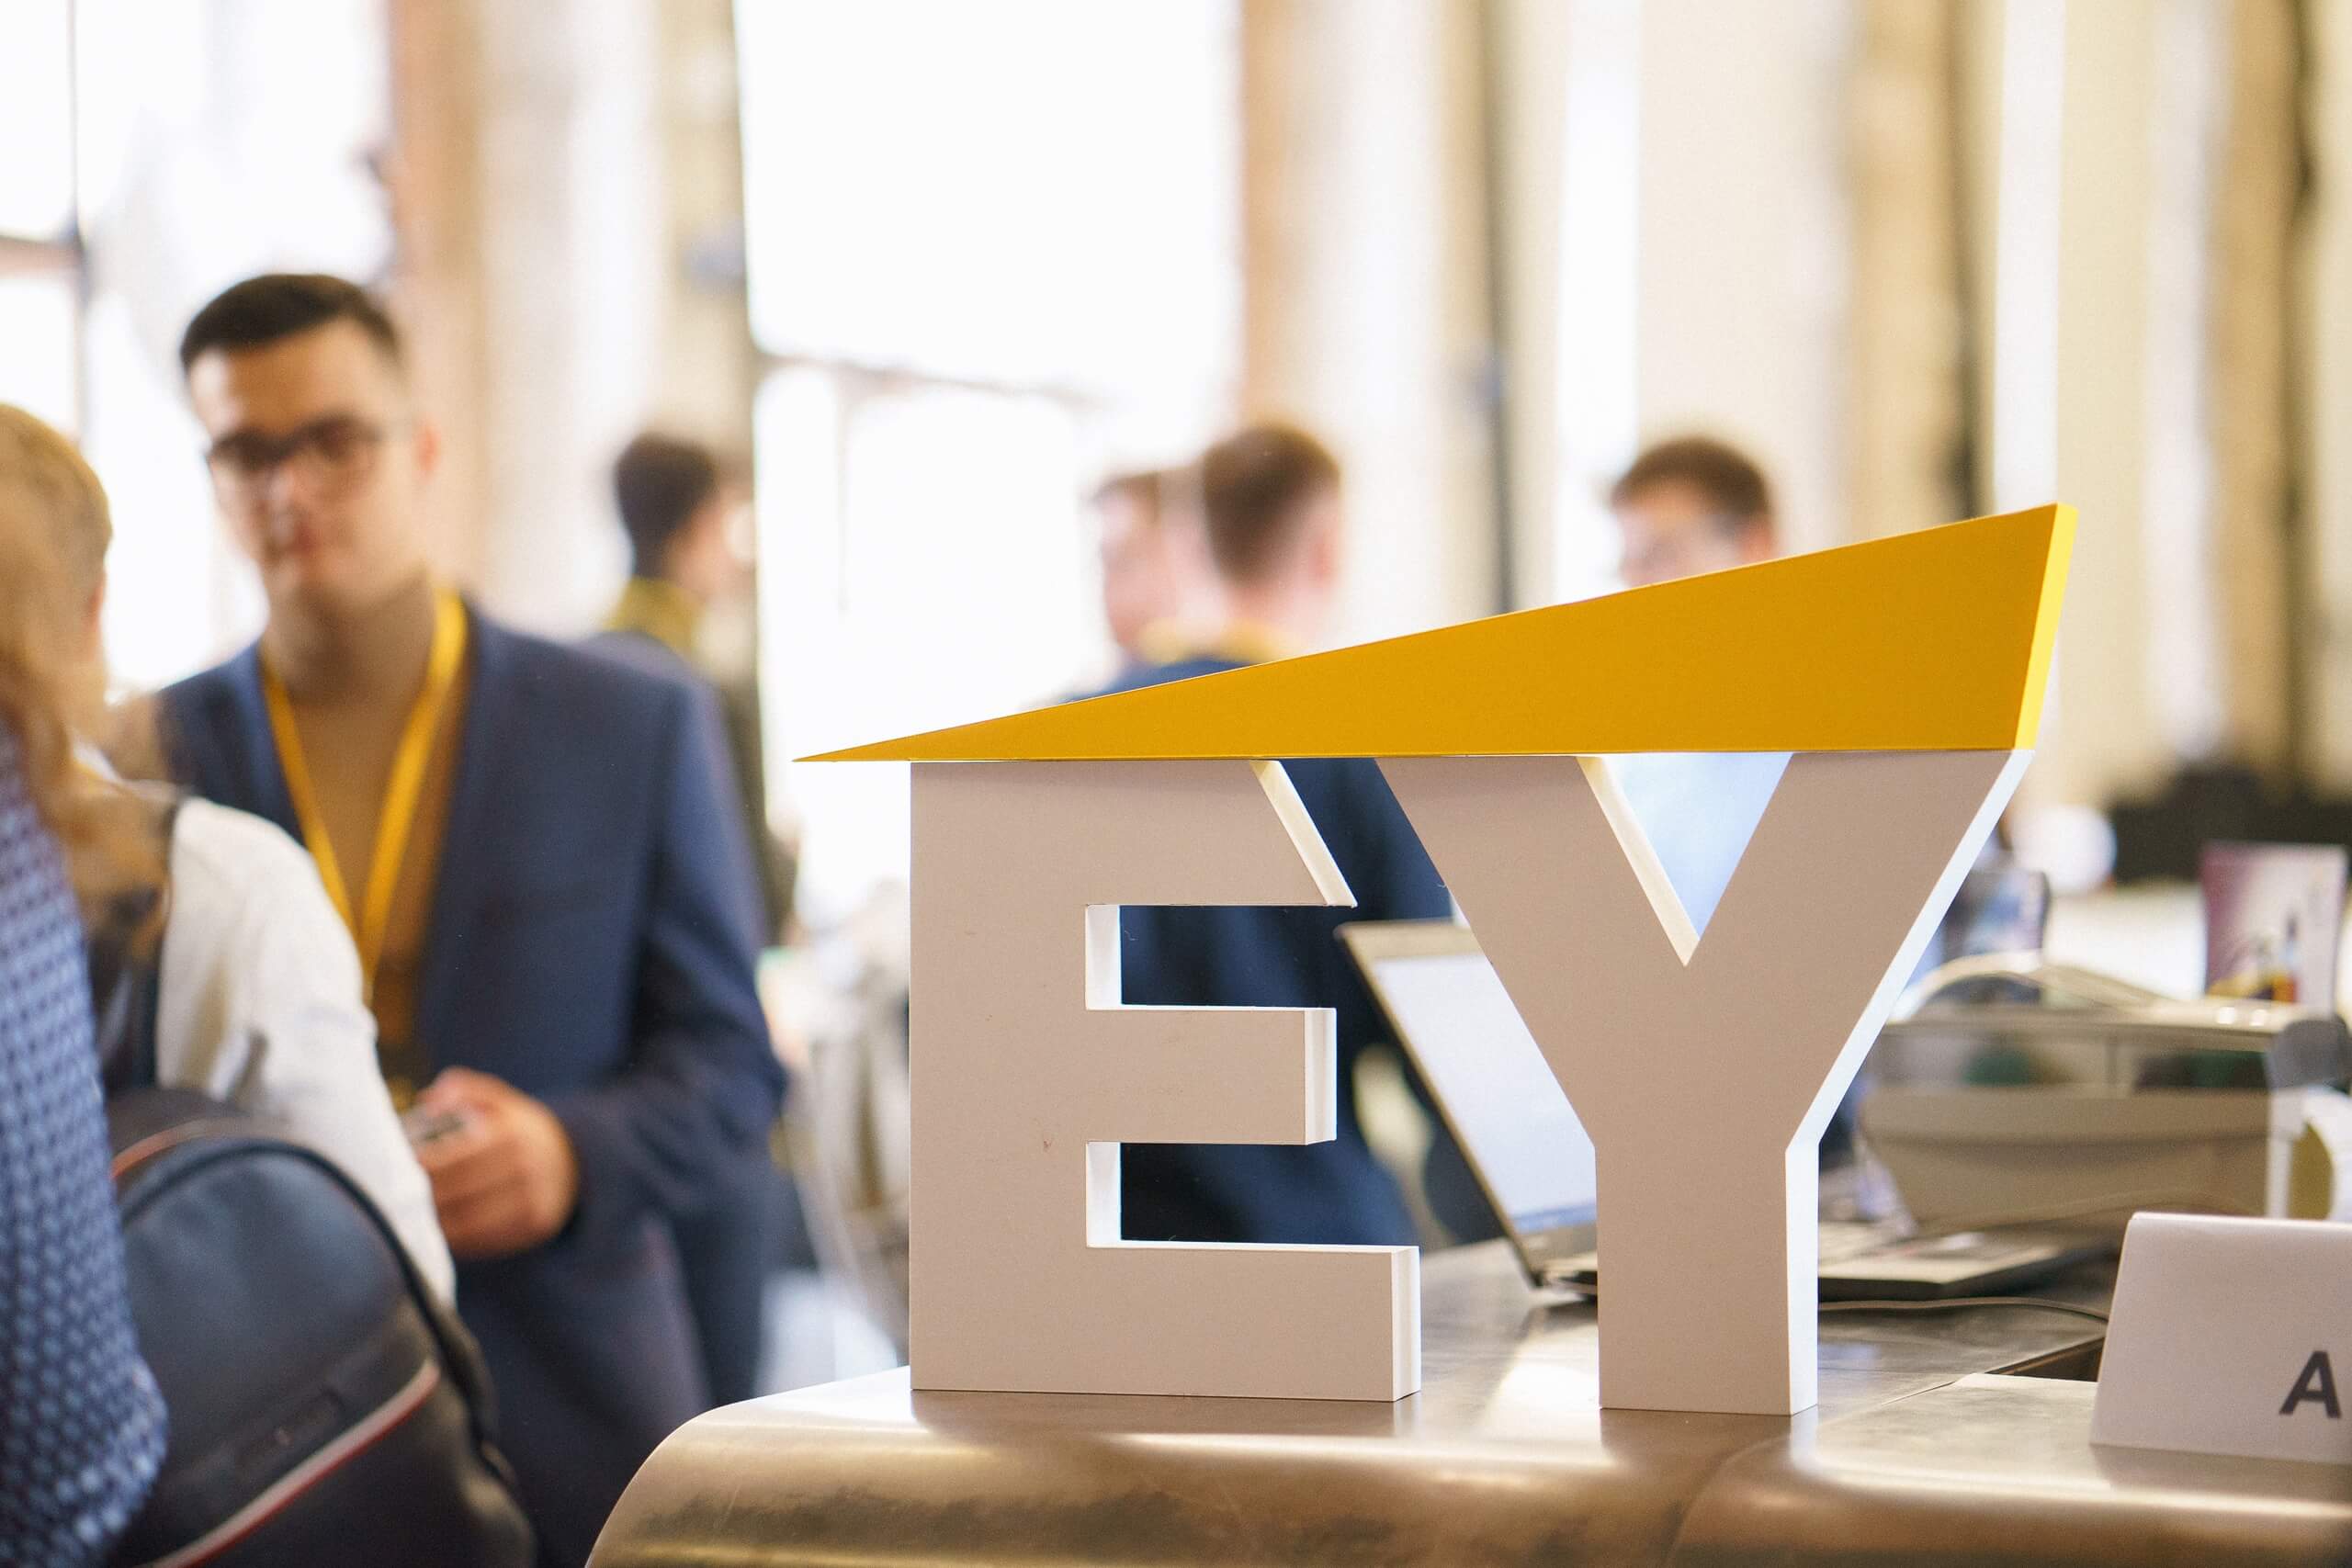 Компания EY открывает новый сервисный центр в Будапеште